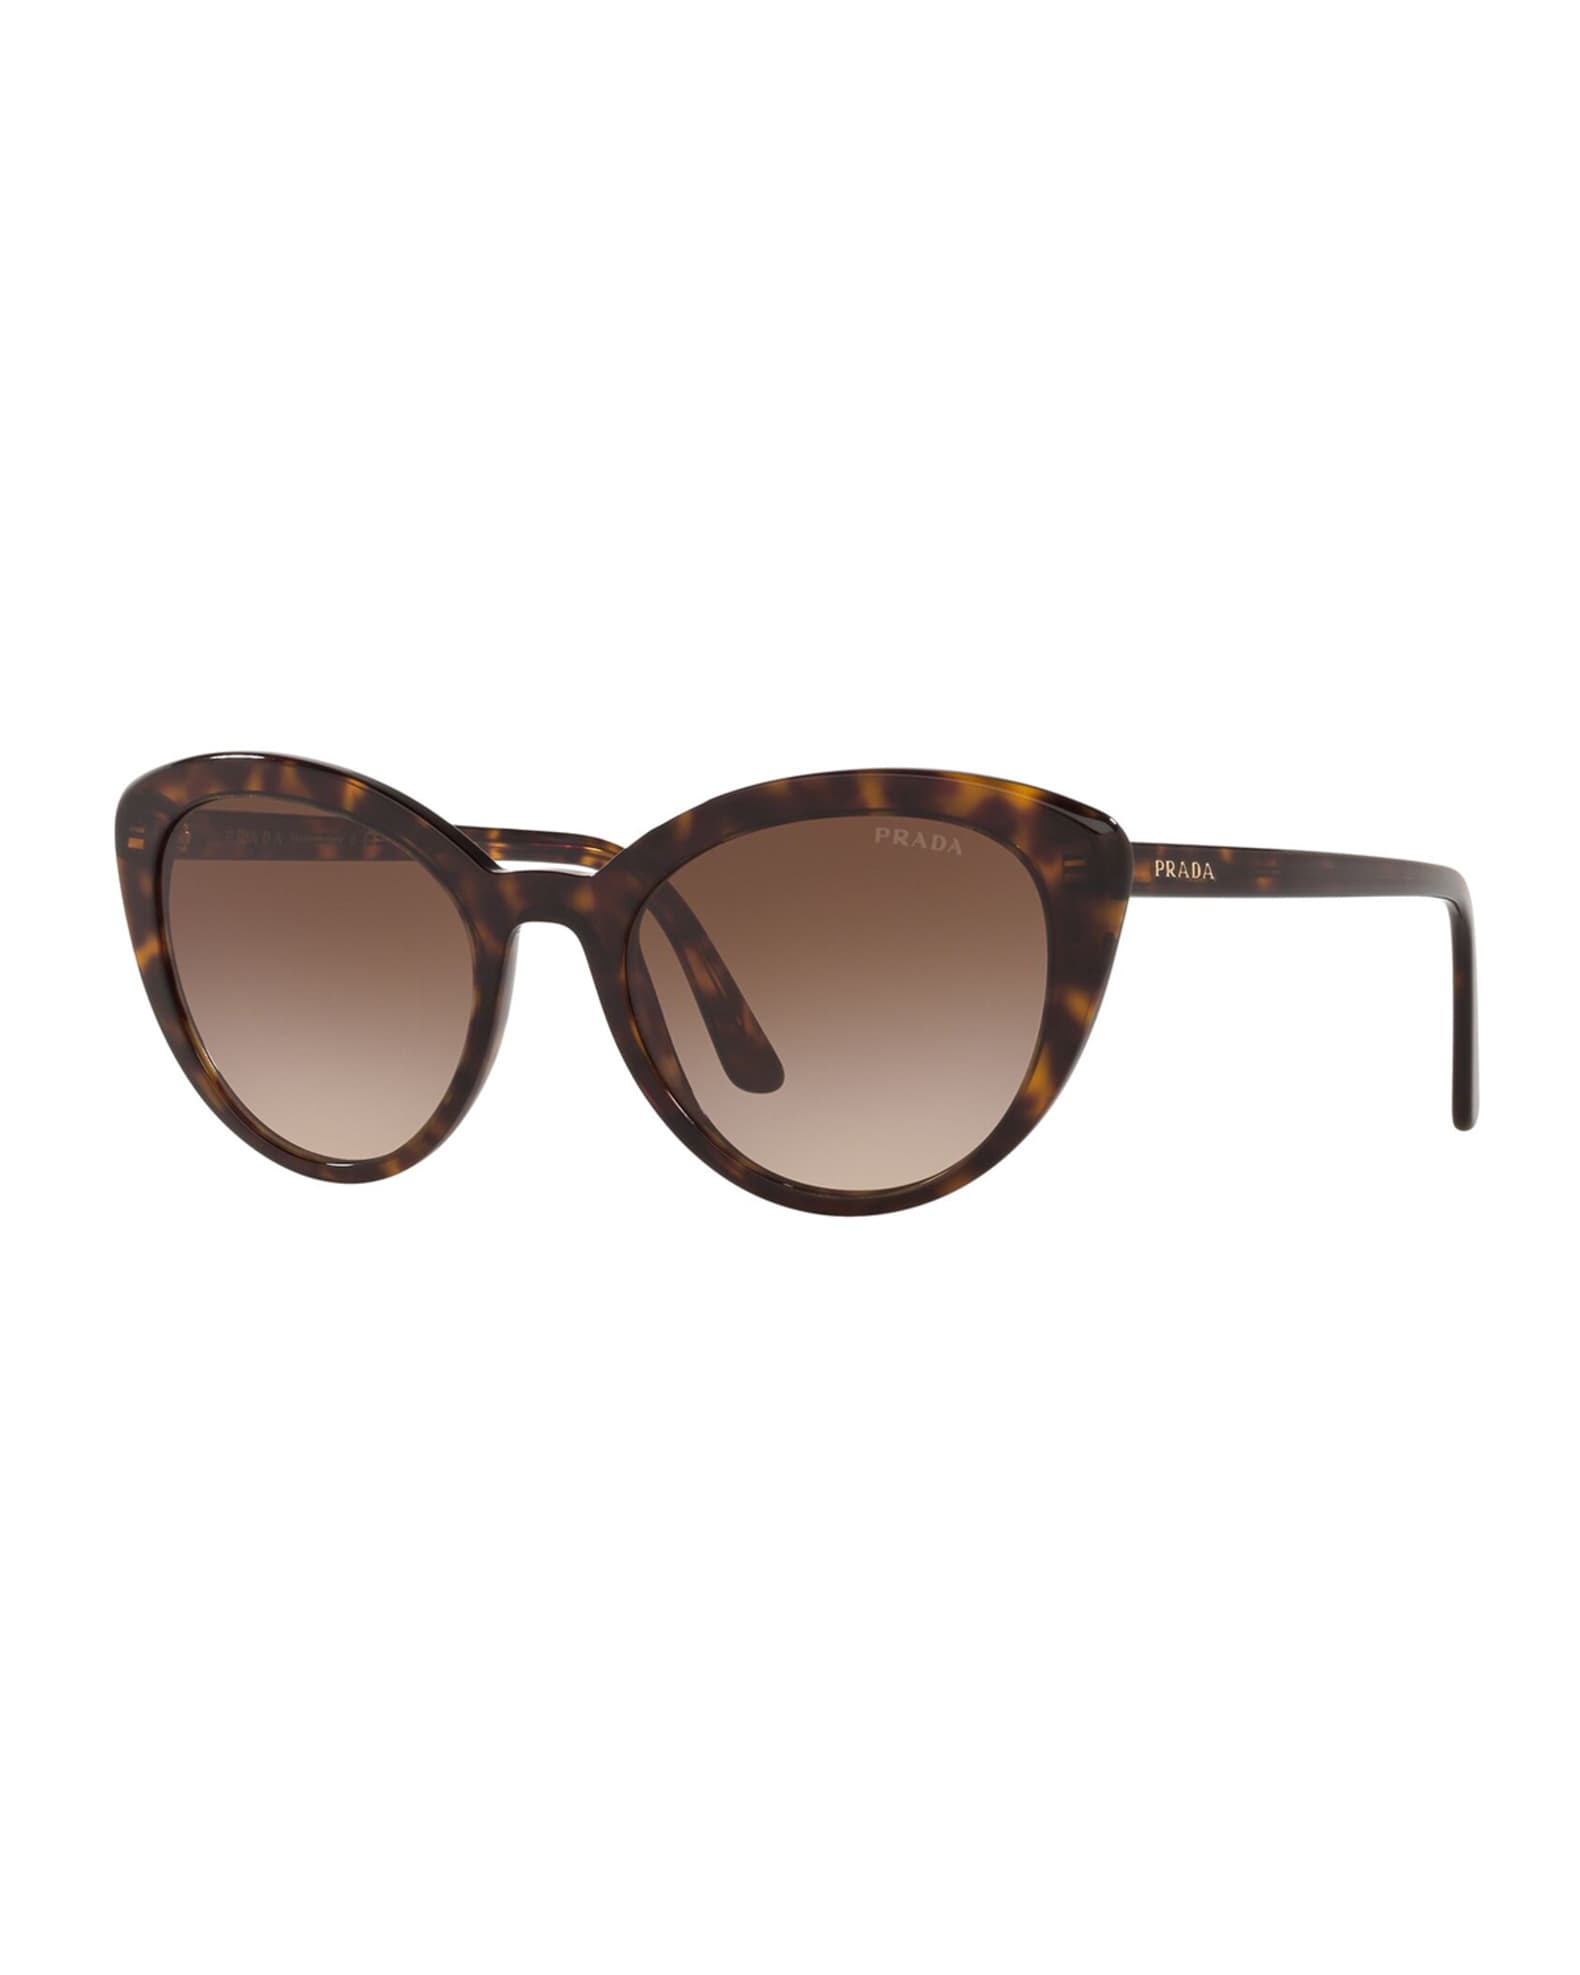 Prada Semi-Transparent Acetate Cat-Eye Sunglasses | Neiman Marcus